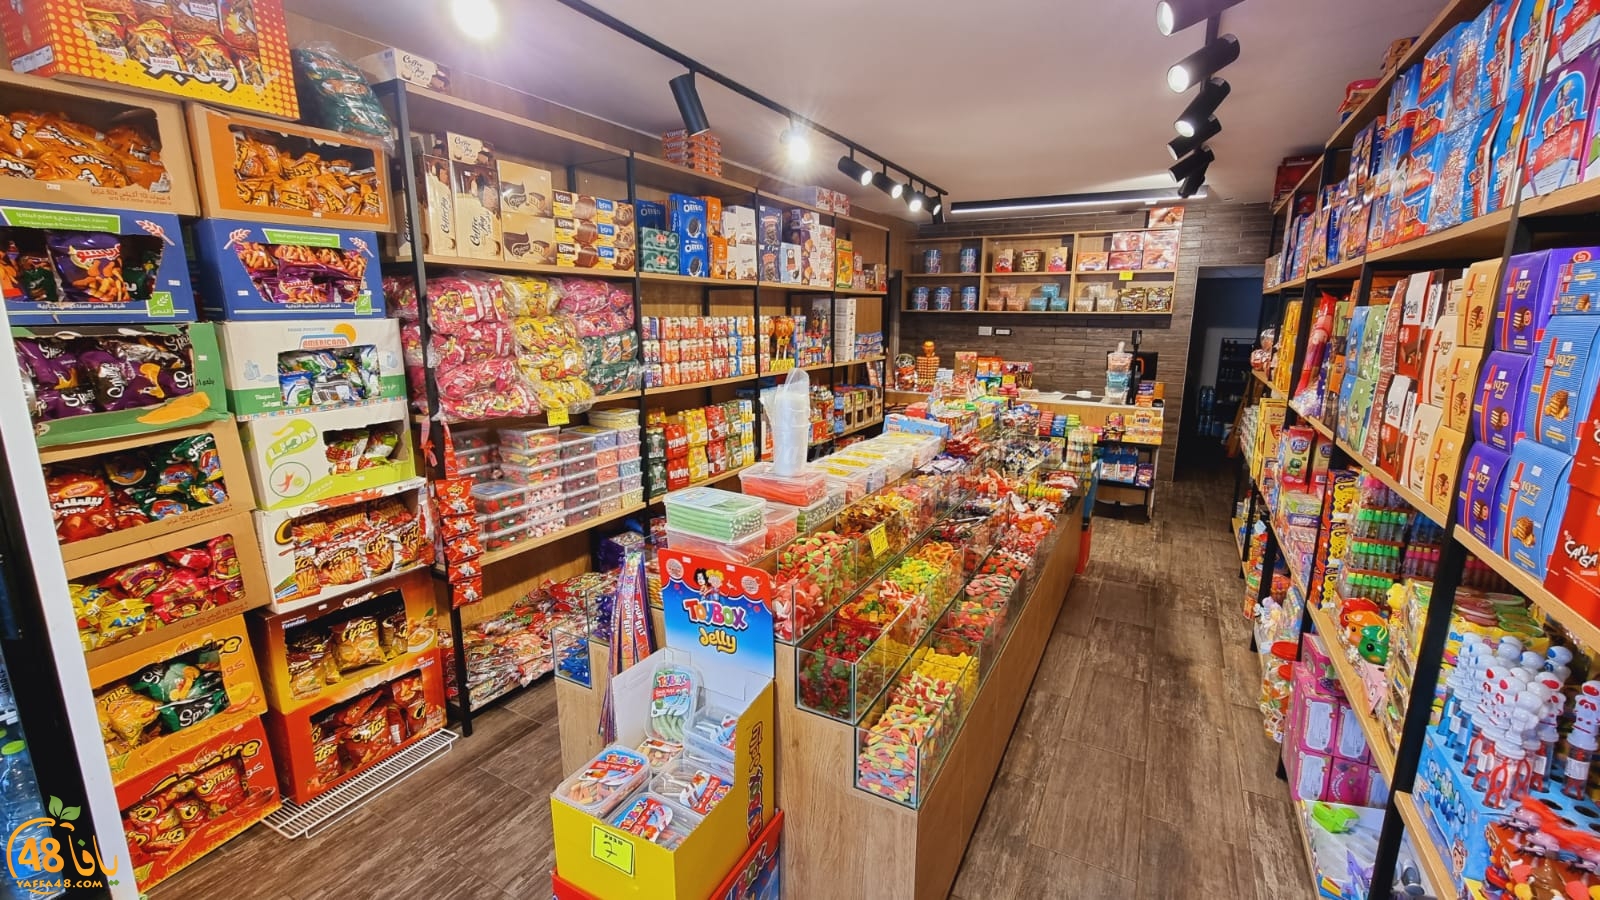   افتتاح محل حلويات يافا لكل أنواع الحلوى والشكولاتة